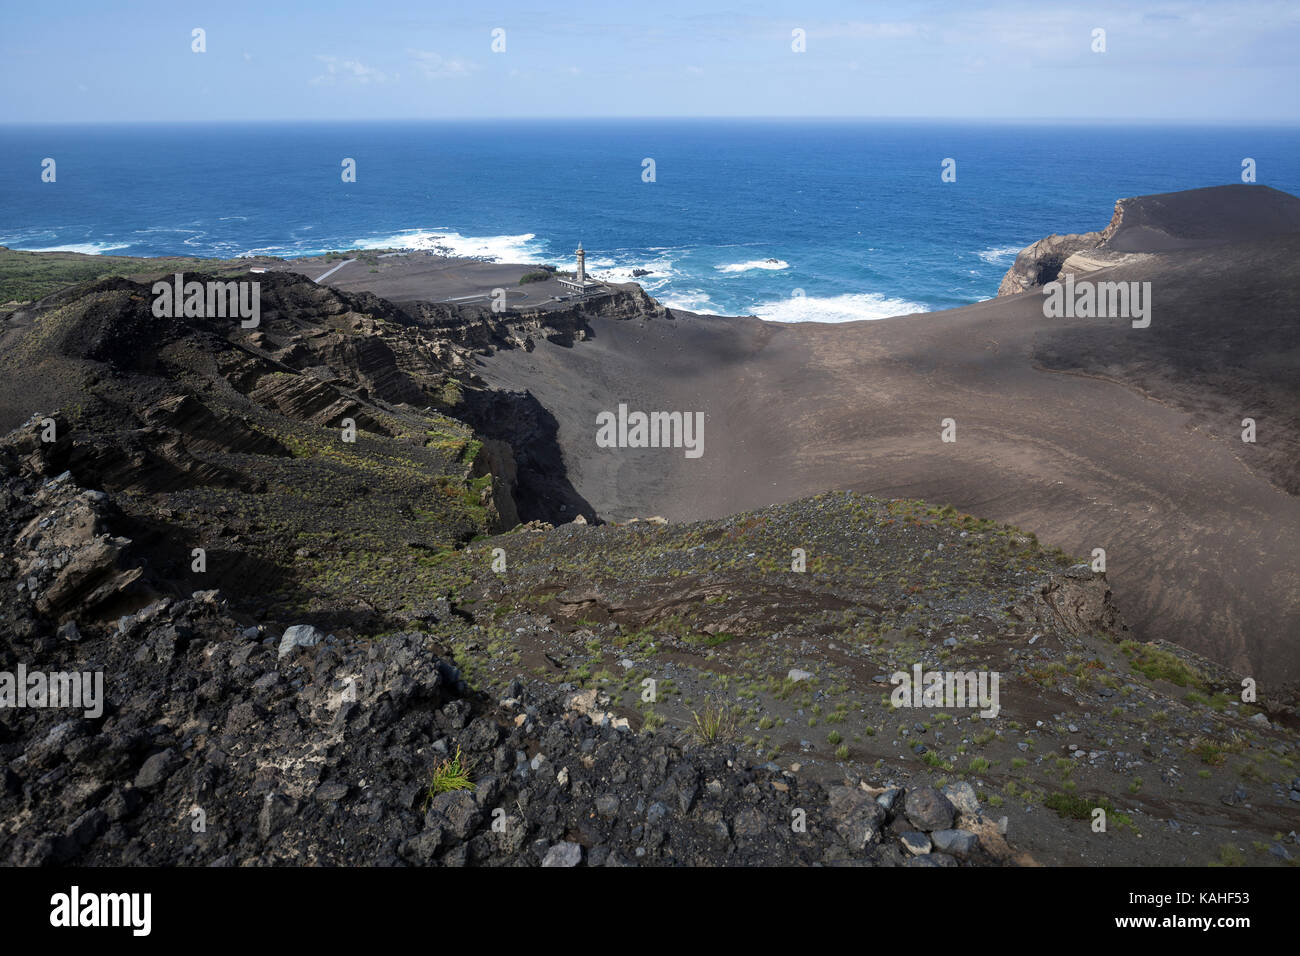 Paysage volcanique, désert de cendres du volcan capelinhos, à Ponta dos capelinhos, capelo, île de Faial, Açores, Portugal Banque D'Images